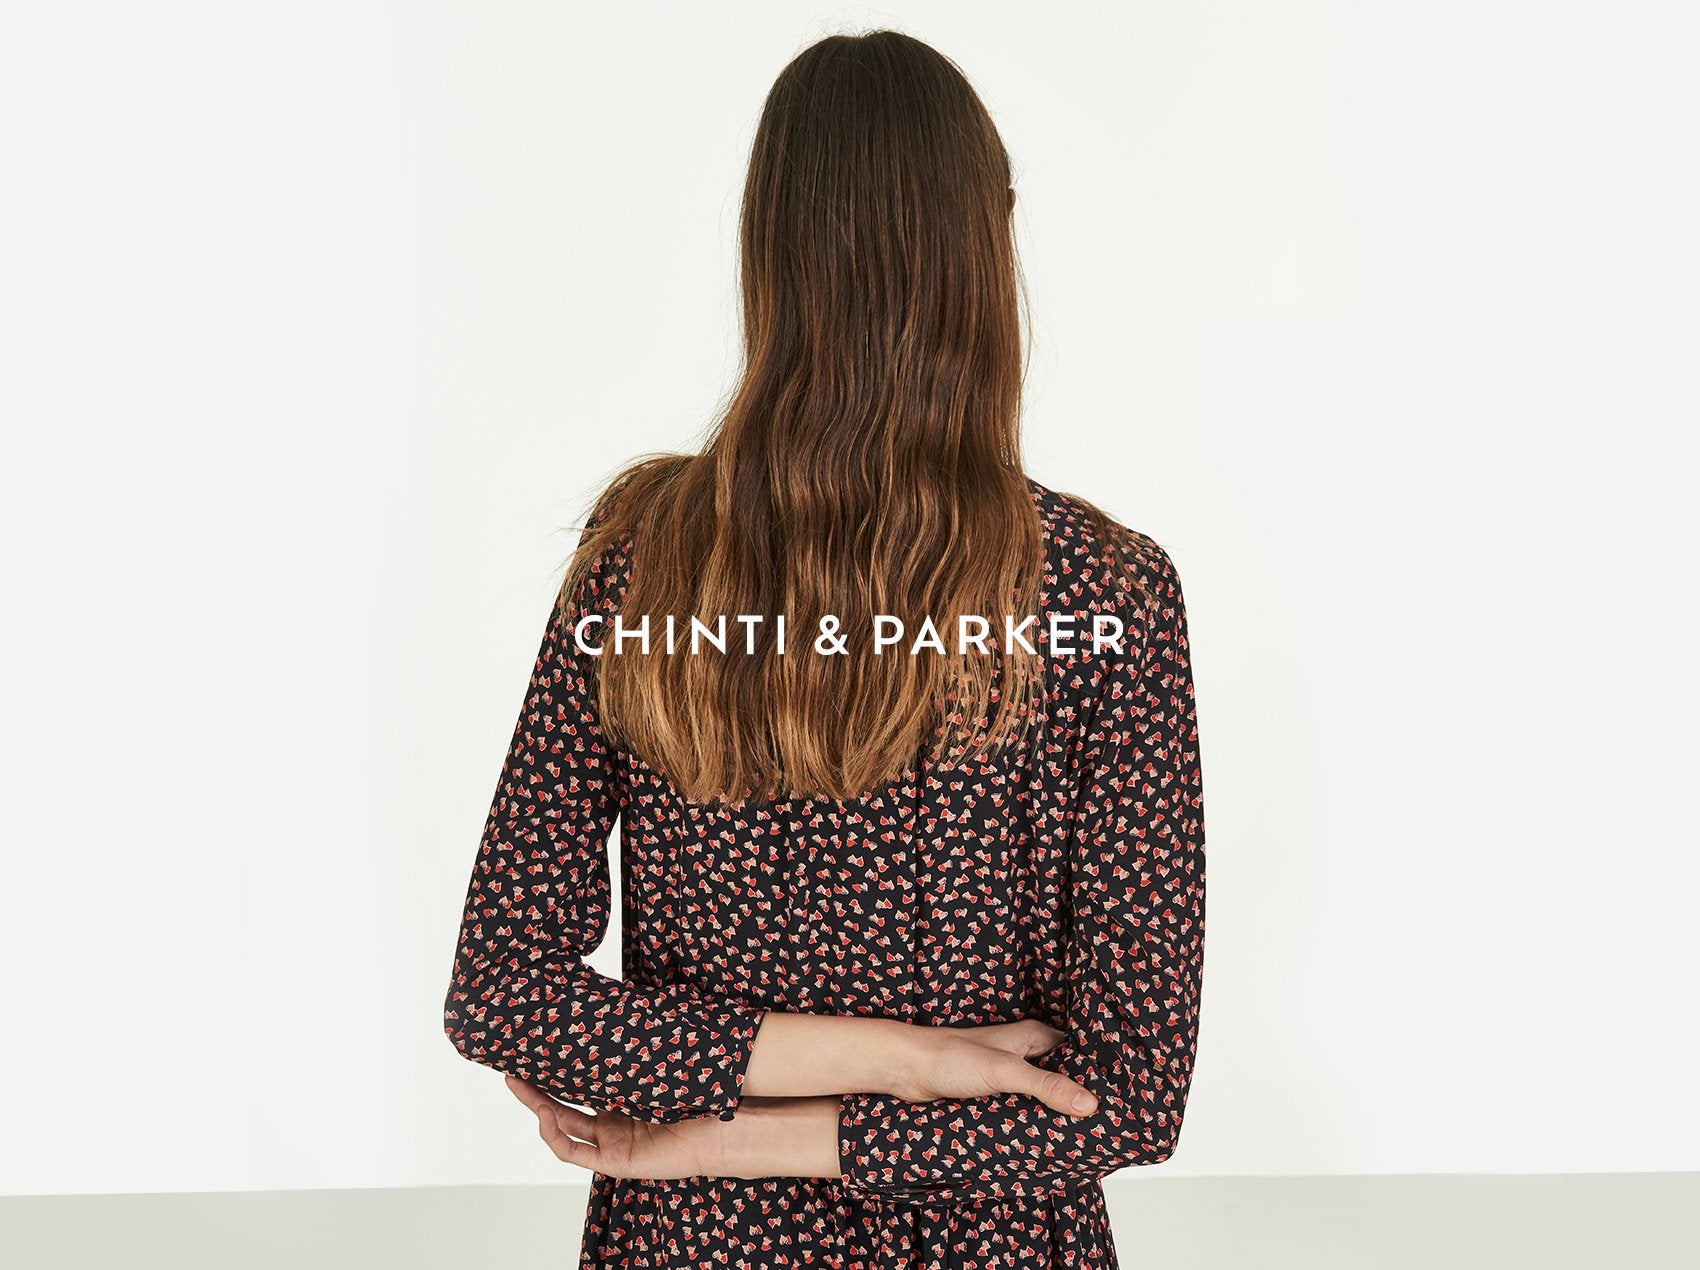 Chinti & Parker AW18 Lookbook